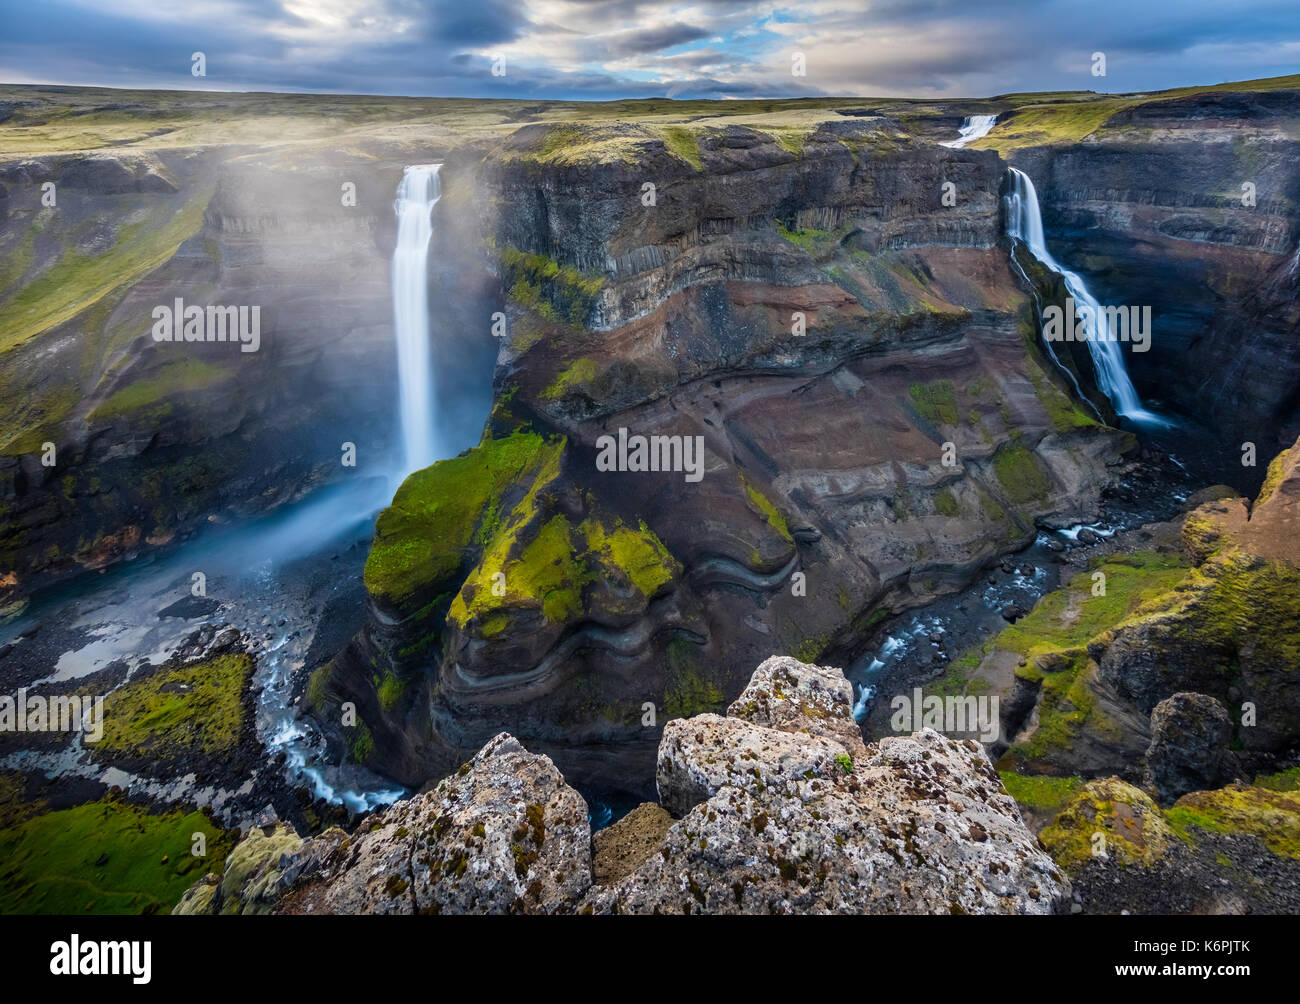 Der Wasserfall Háifoss in der Nähe des Vulkans Hekla im Süden Islands befindet. Der Fluss Fossá, einem Nebenfluss der Þjórsá, fällt hier aus einer Höhe von Stockfoto